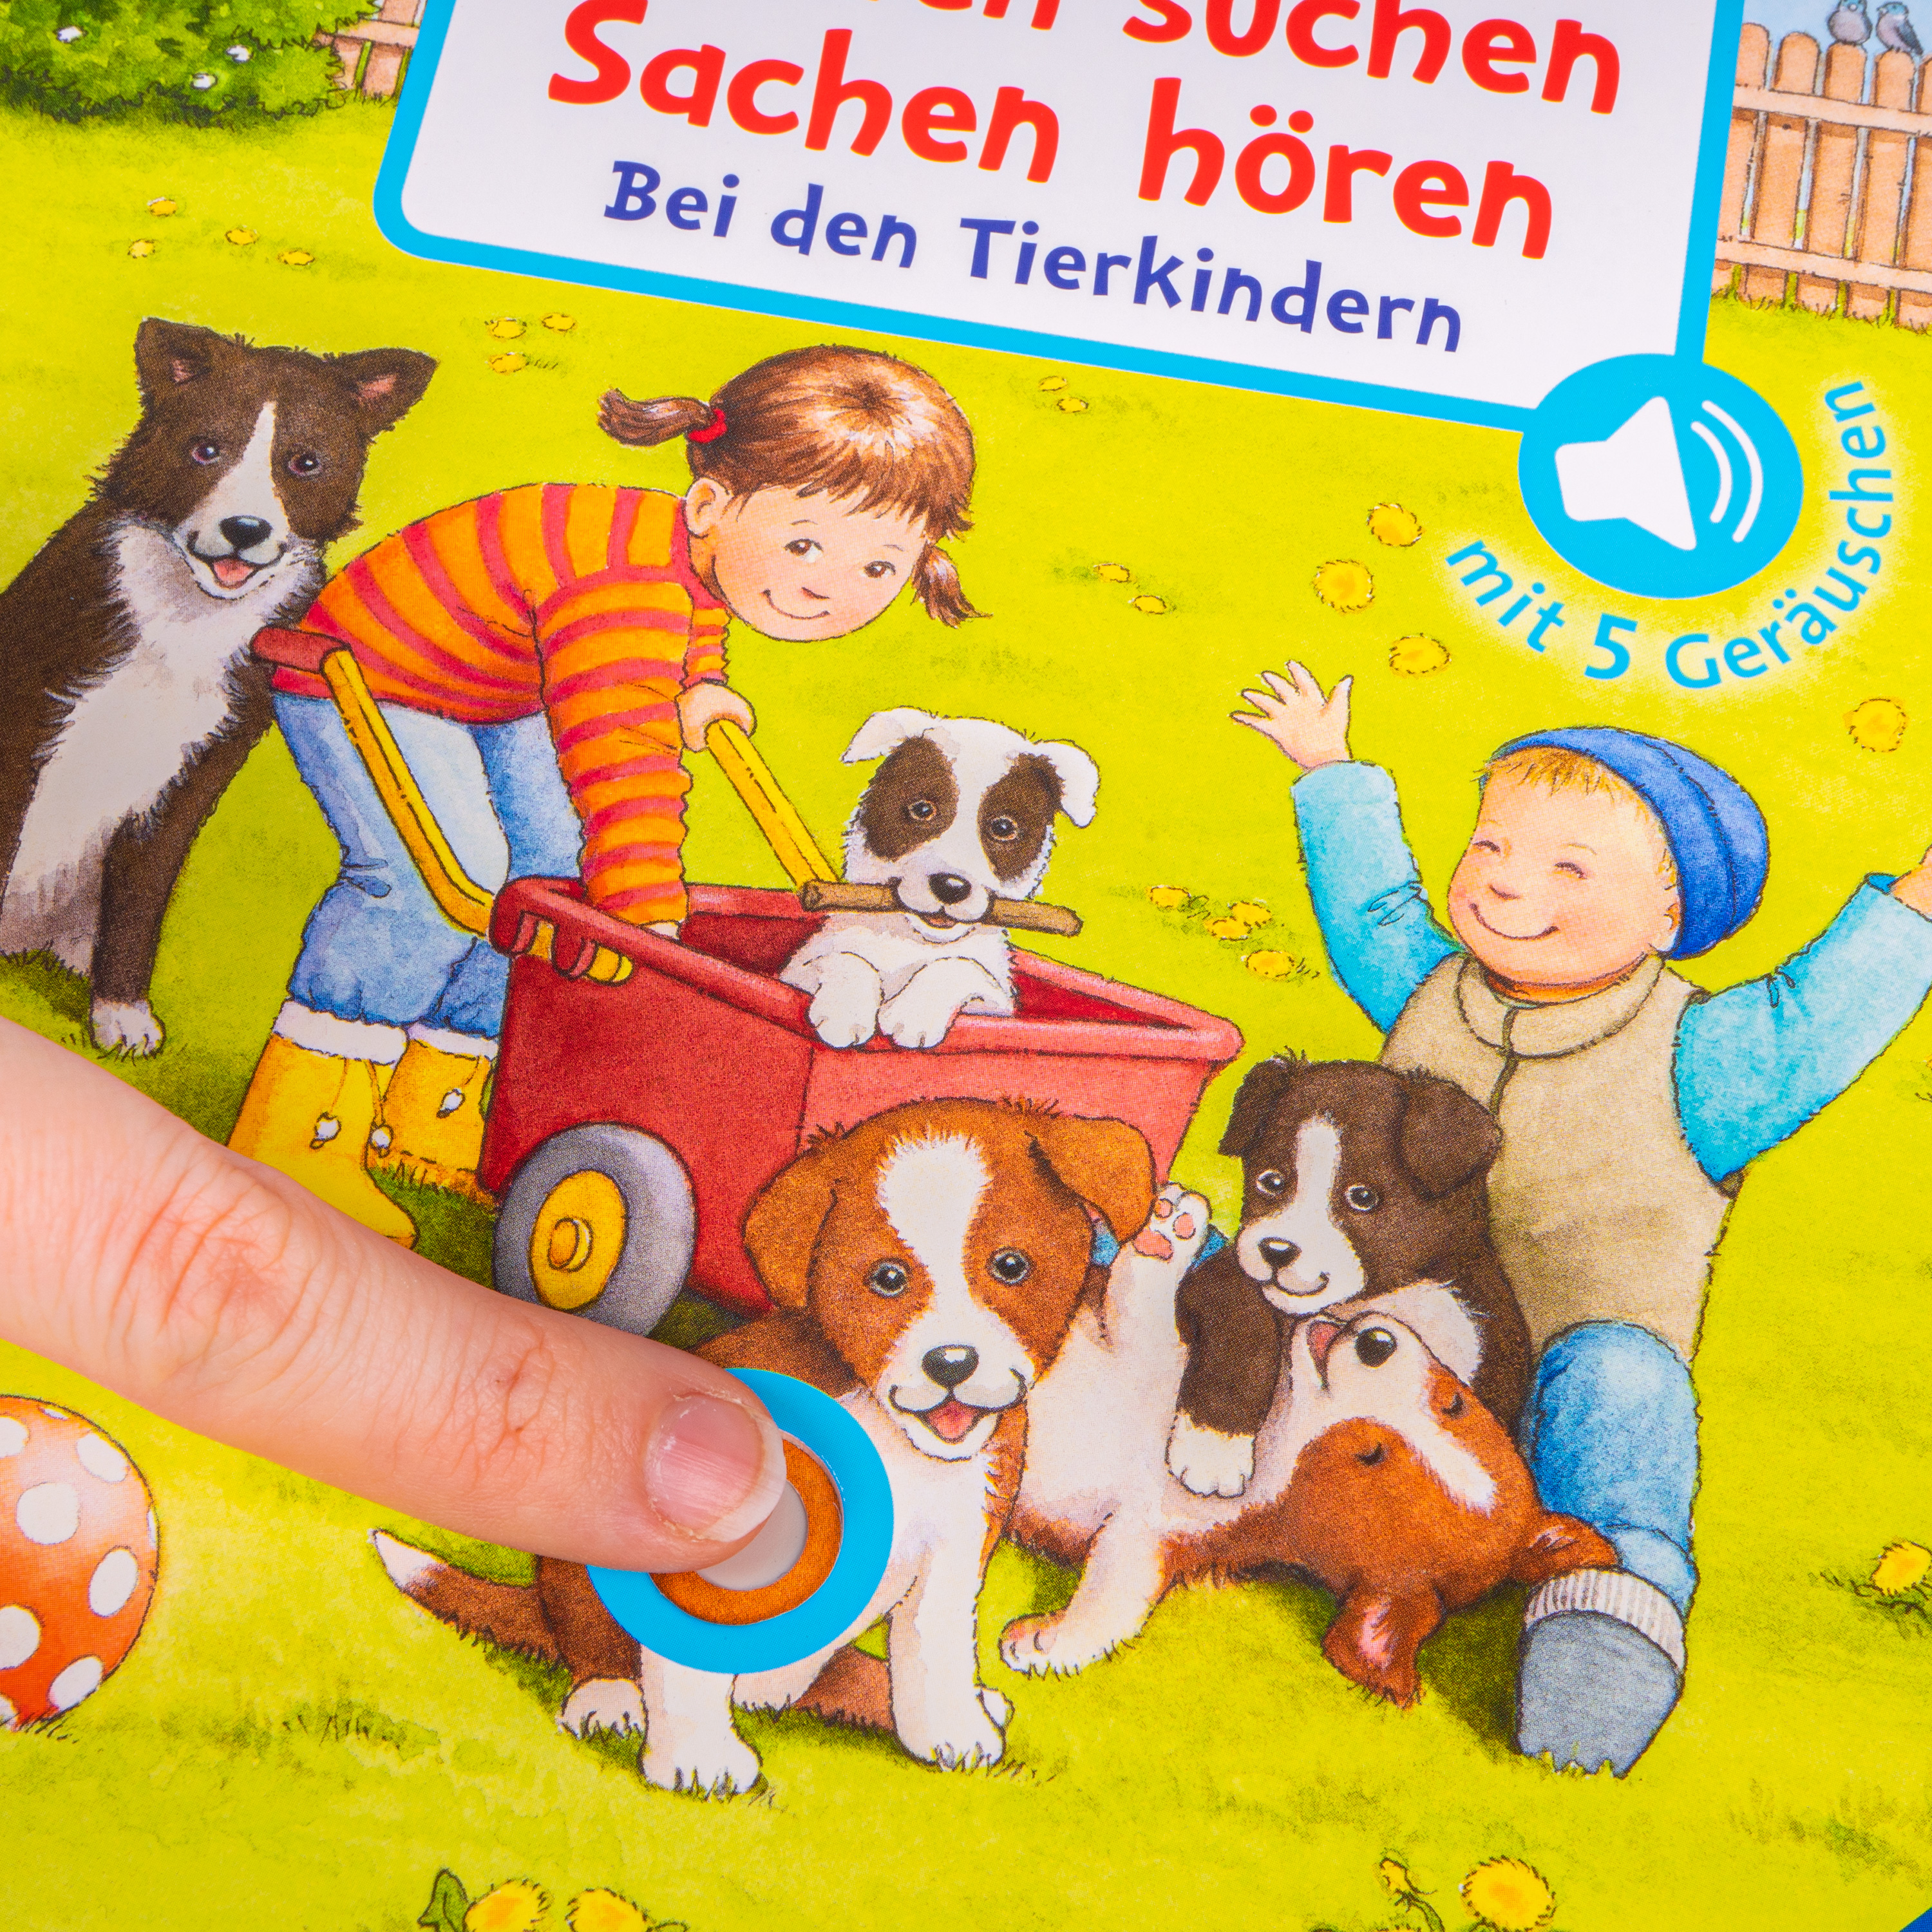 Wimmelbuch 'Sachen suchen, Sachen hören: Bei Tierkindern'